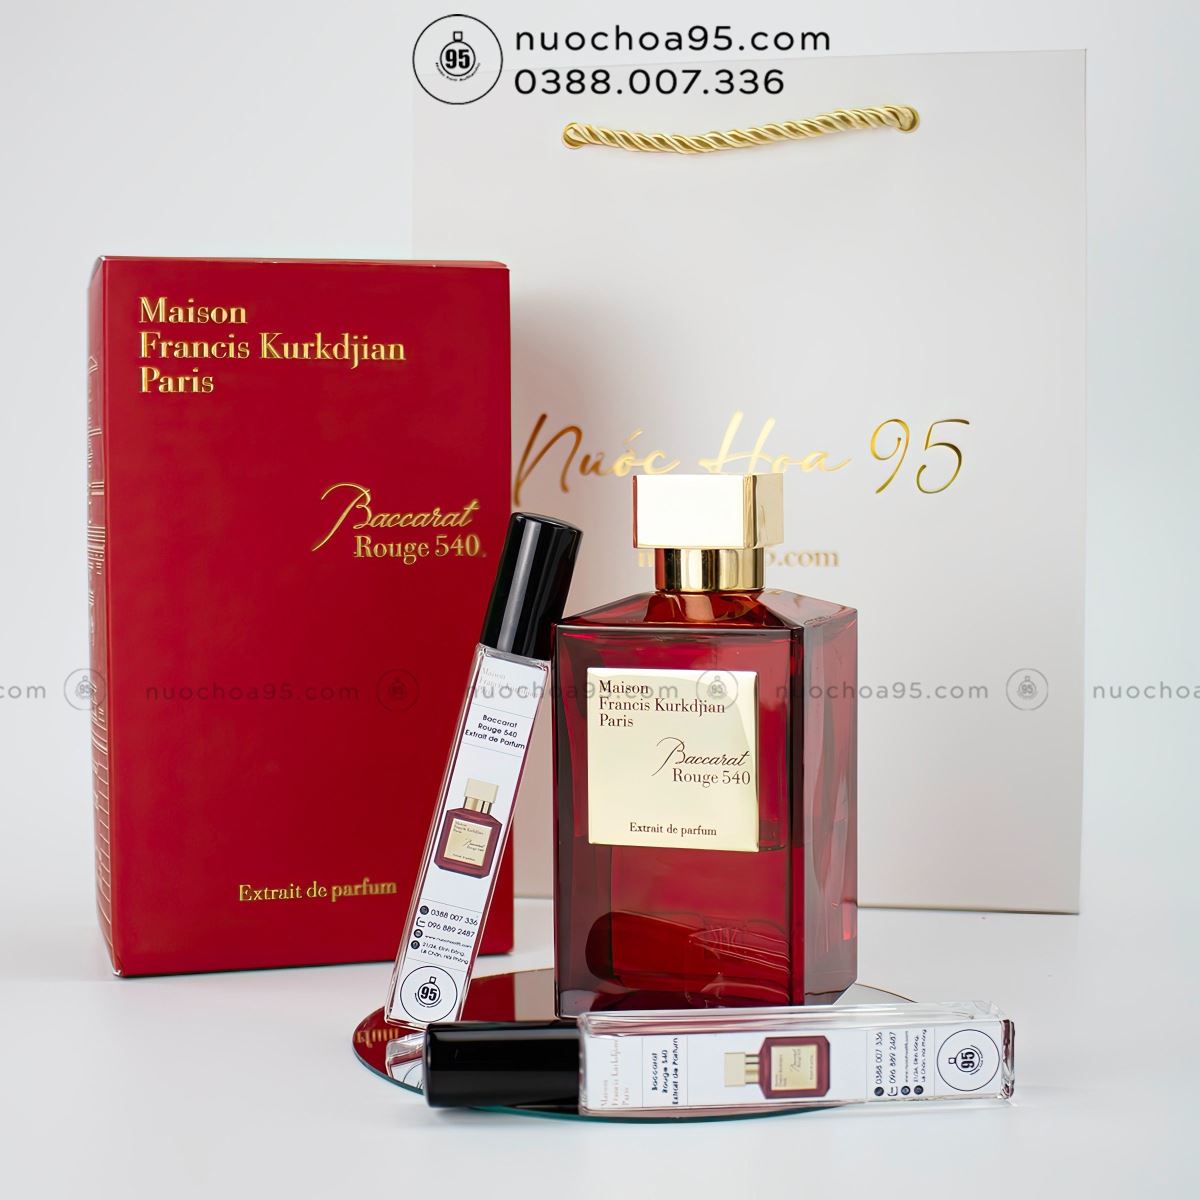 Nước hoa MFK Baccarat Rouge 540 Extrait de Parfum - Ảnh 3